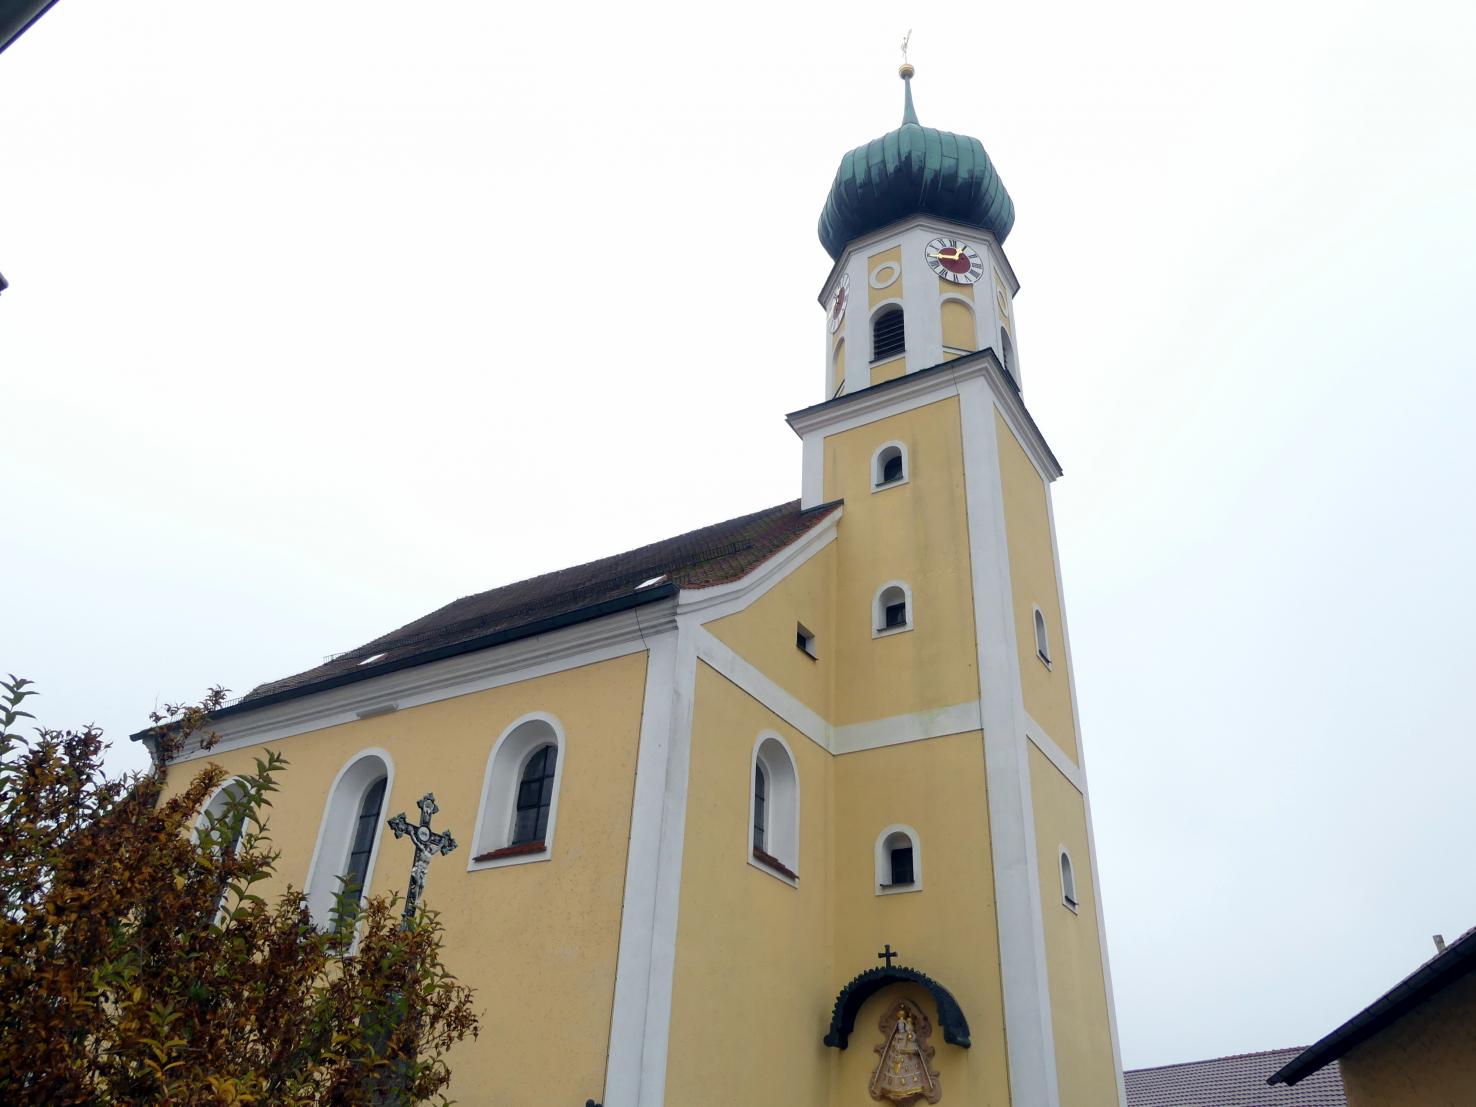 Arrach (Falkenstein), Pfarrkirche St. Valentin, Bild 1/5